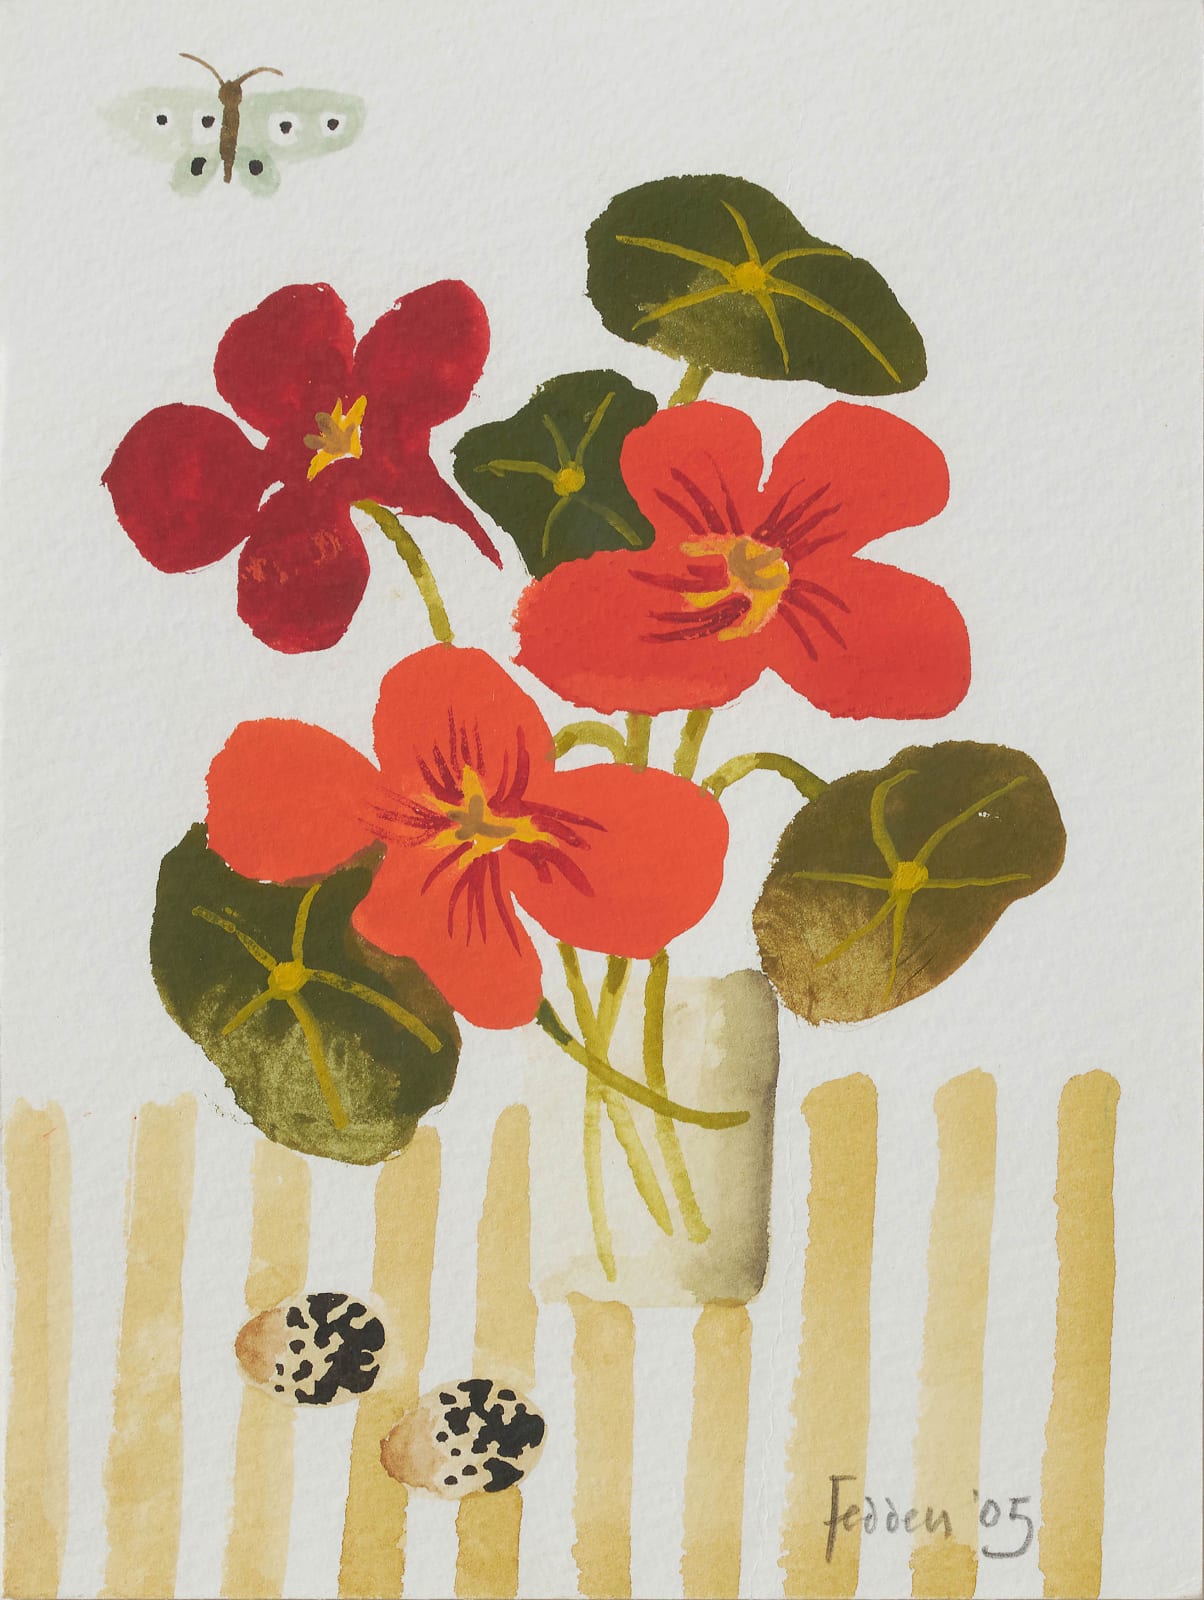 Mary Fedden, Still life of flowers, eggs & butterflies, 2005